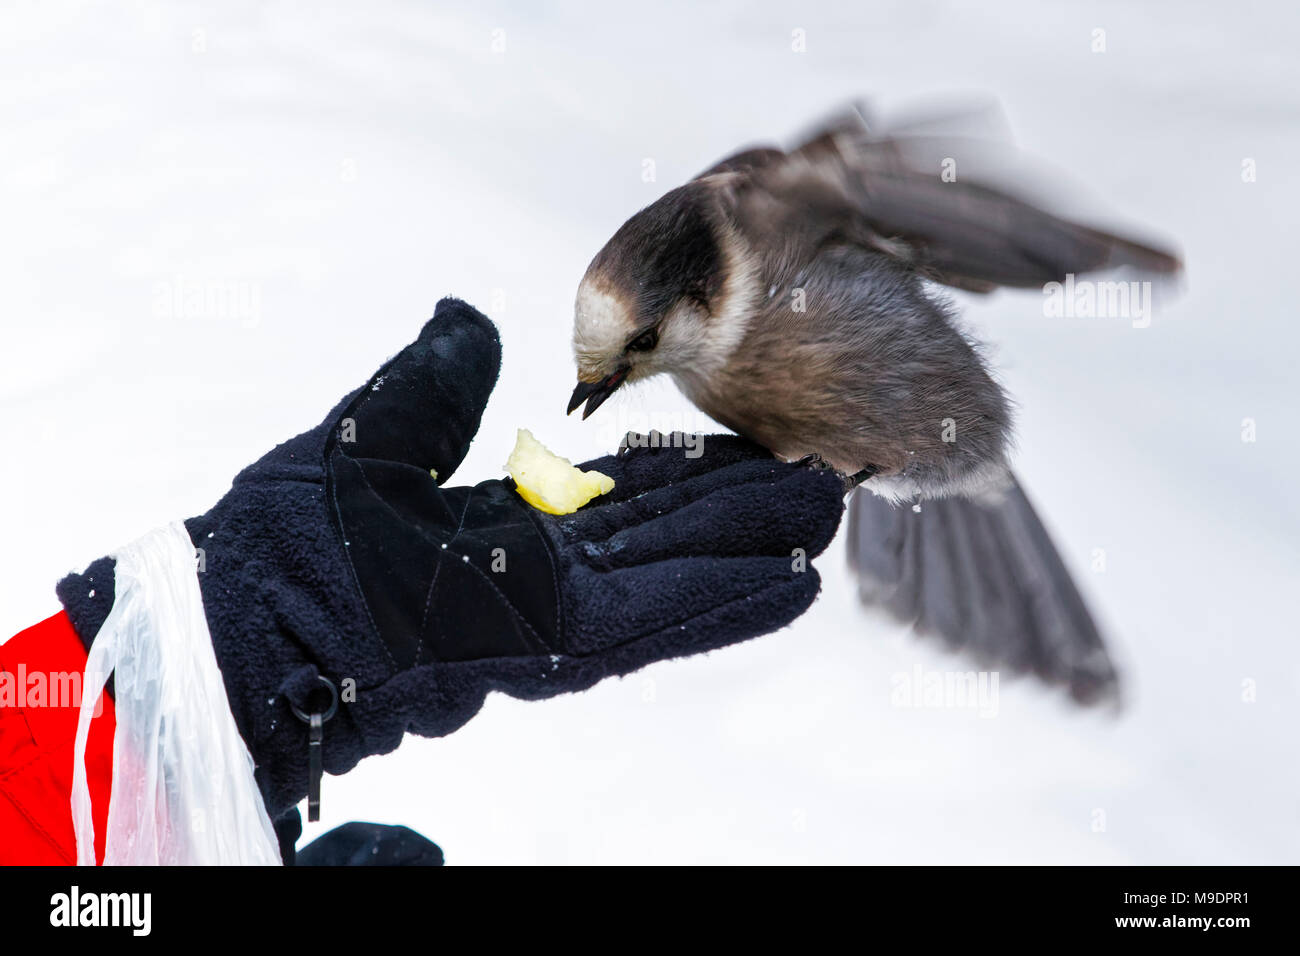 43,118.09134 close-up di grigio Jay, Canada jay sbattimenti le sue ali e mangiare fuori di una donna di mano mentre si alimenta l'uccello Foto Stock